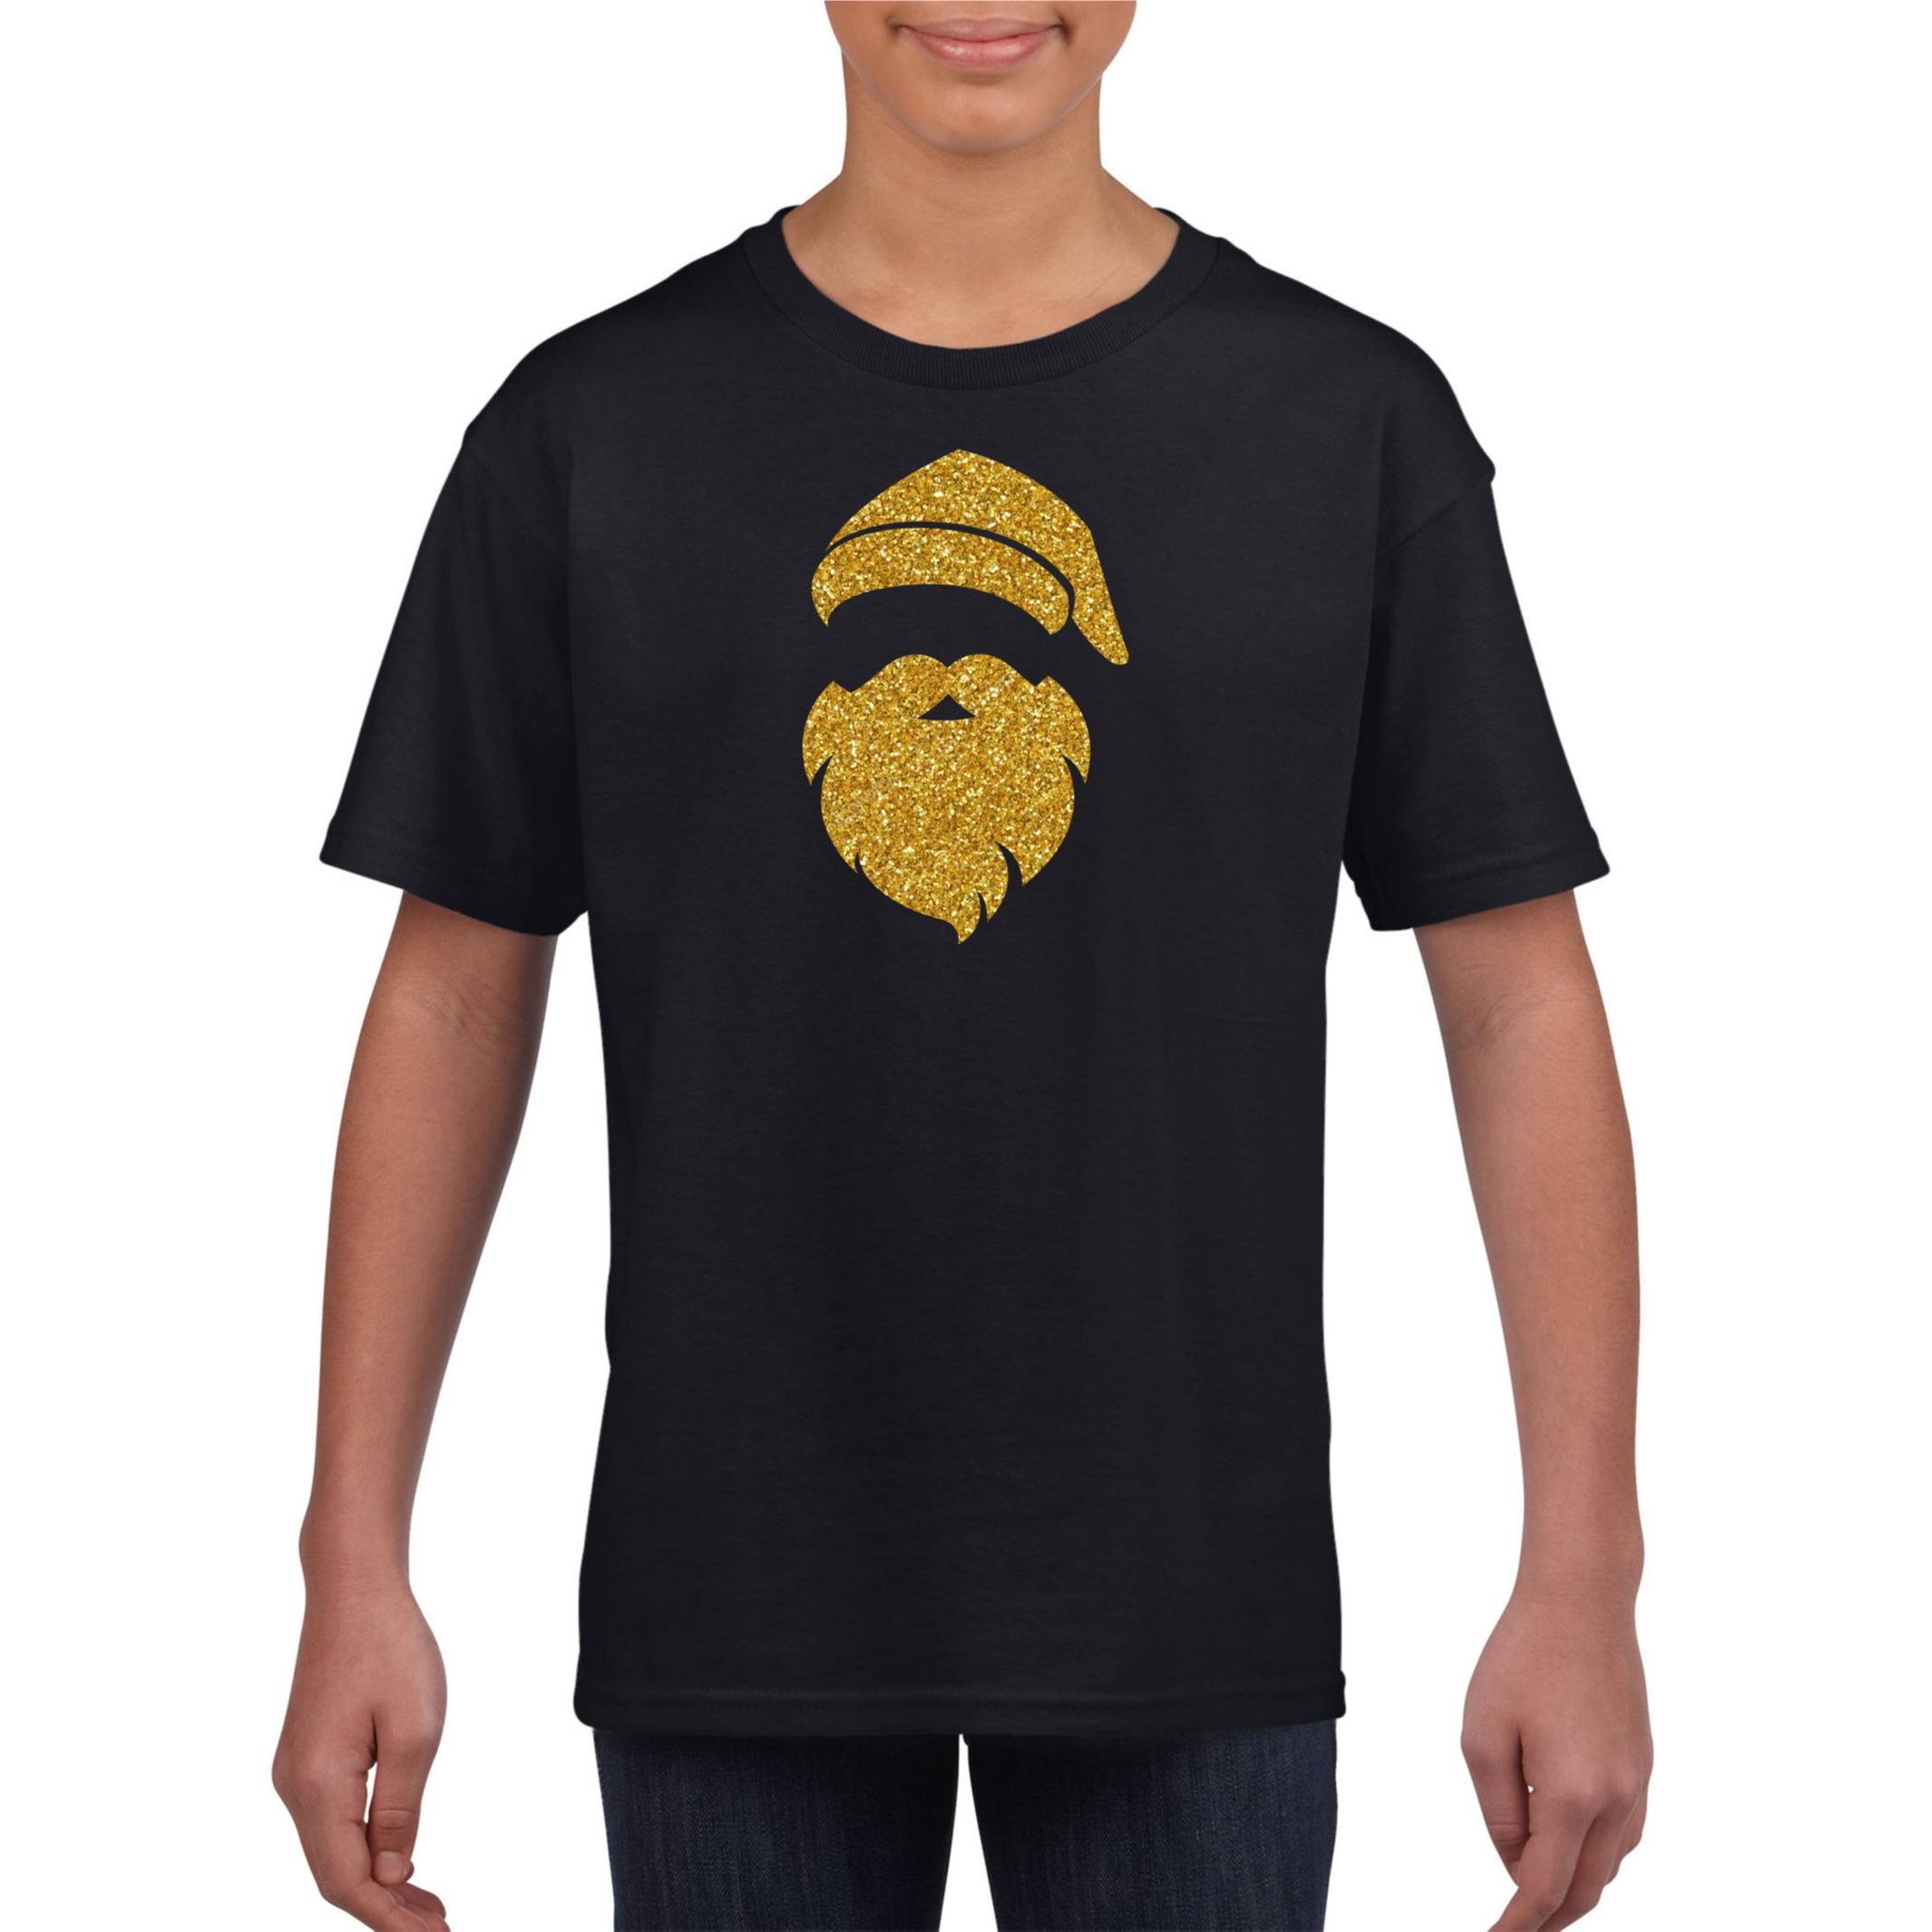 Kerstman hoofd Kerst t-shirt zwart voor kinderen met gouden glitter bedrukking